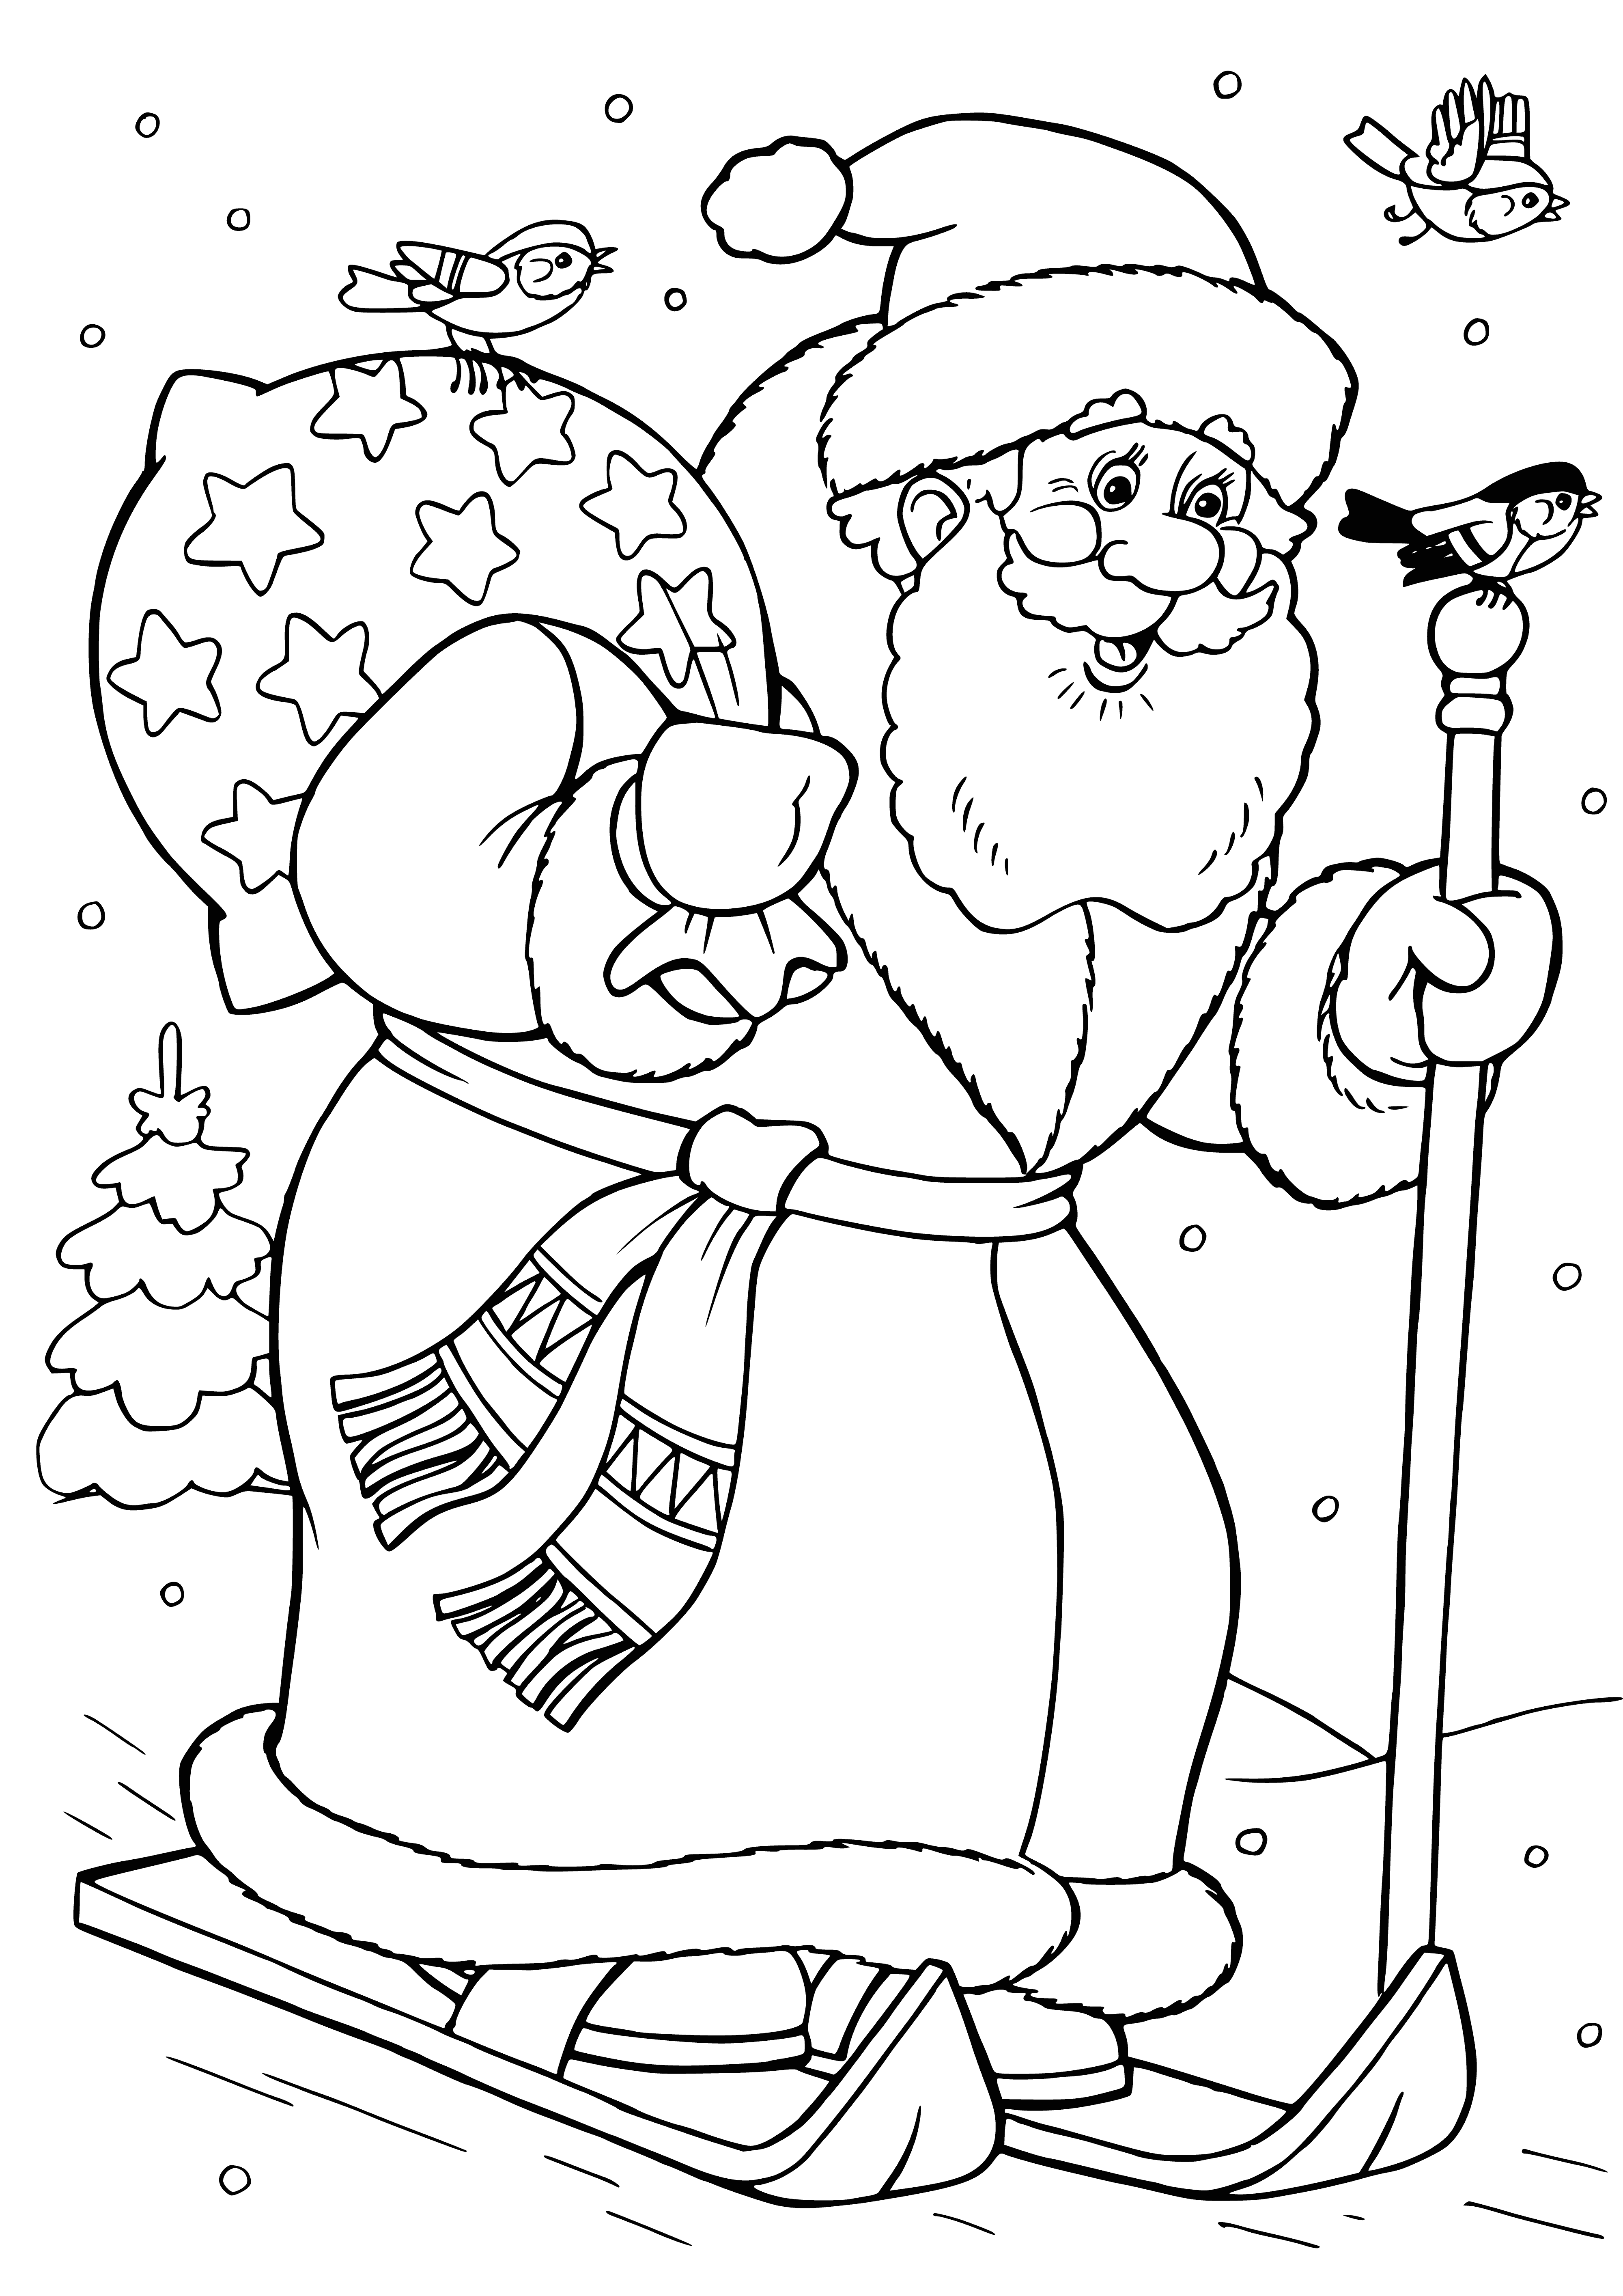 Noel Baba kayaklar üzerinde boyama sayfası